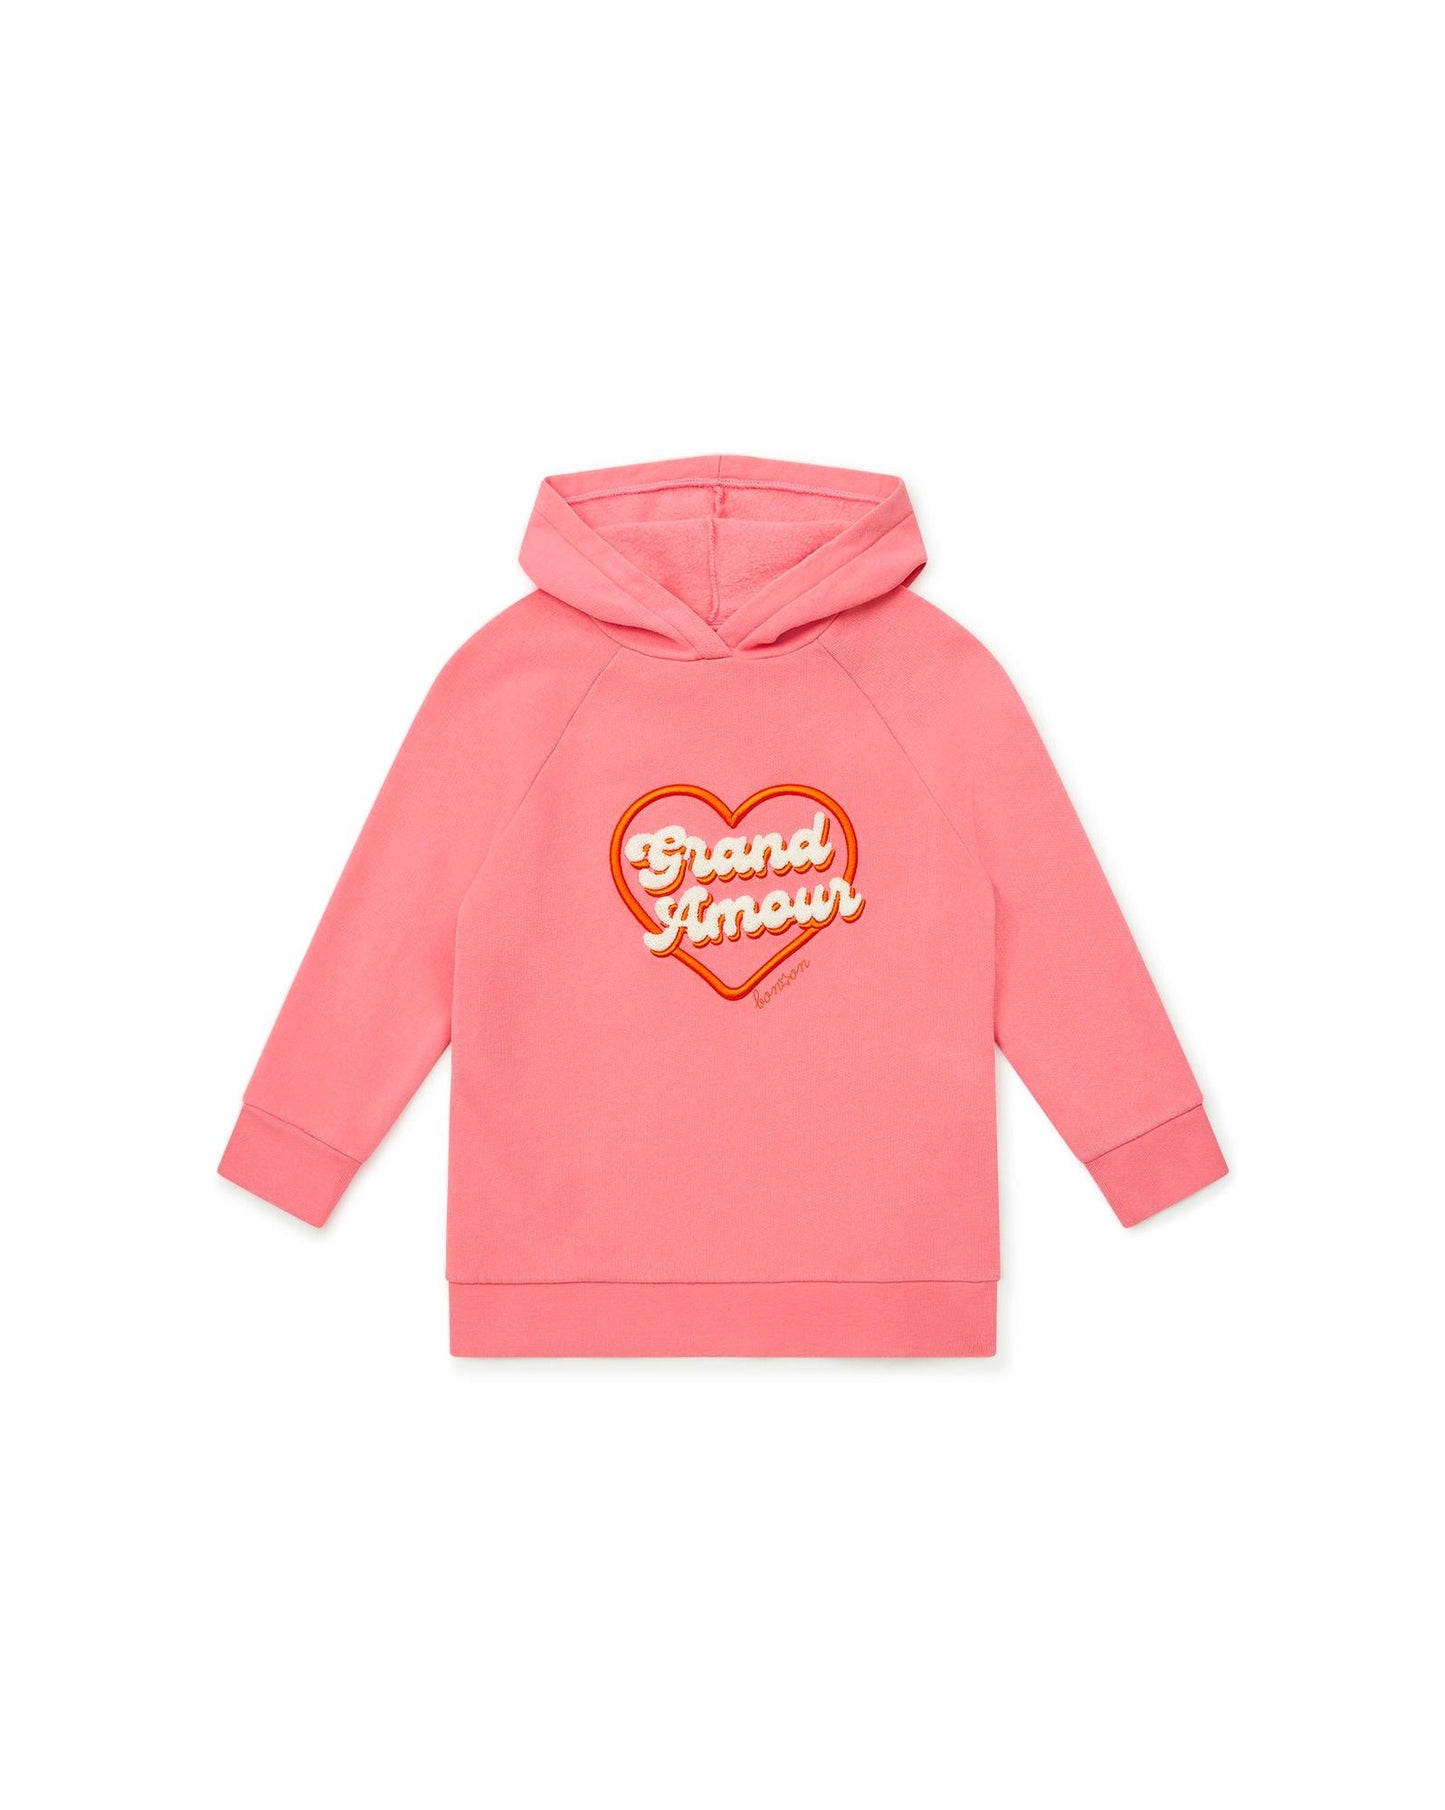 Sweatshirt - Cap Amour Pink has Hood